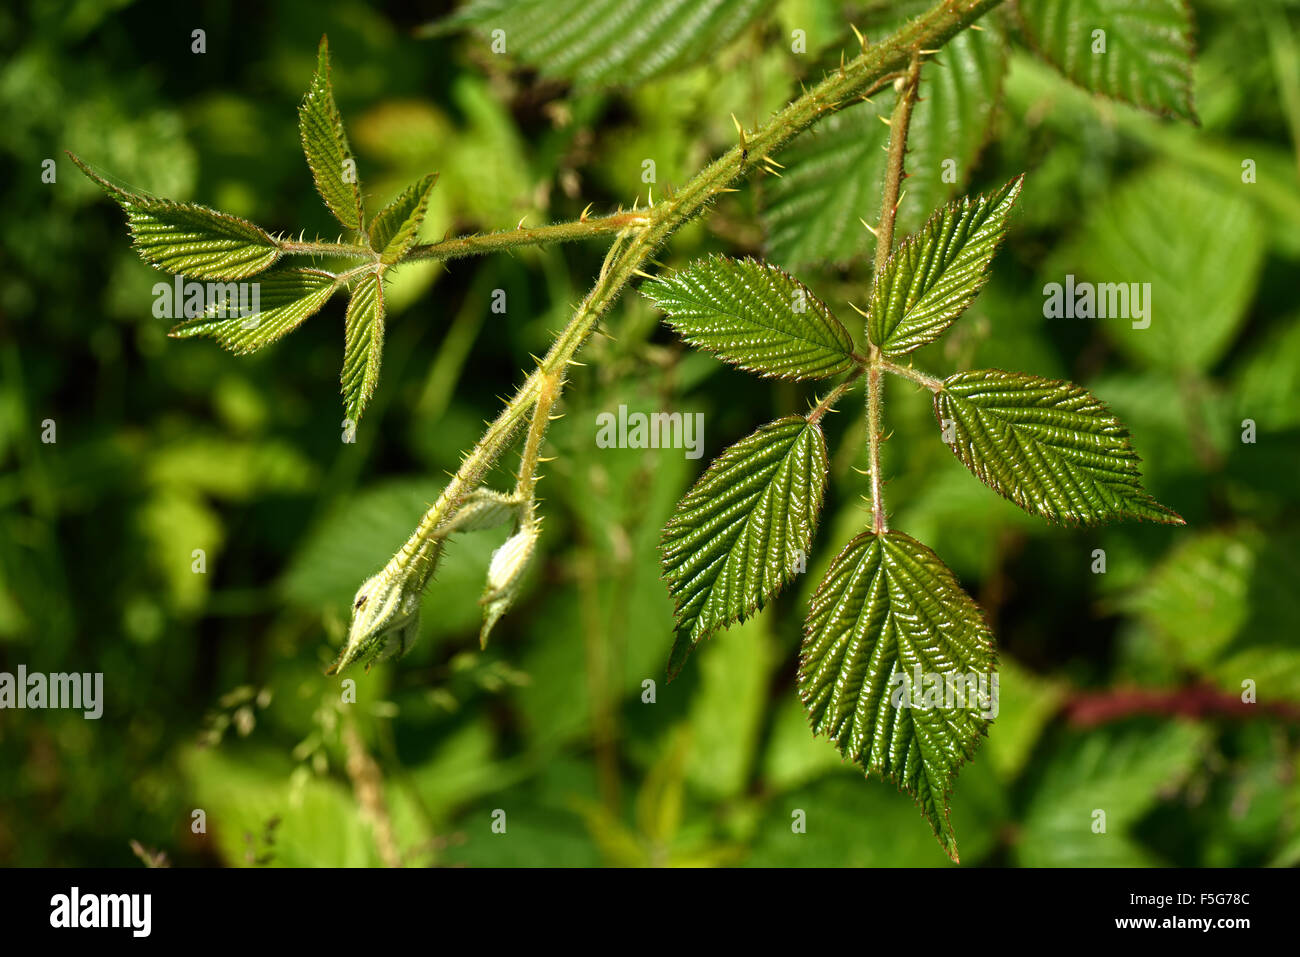 Punto de crecimiento de apex una incoherente o blackberry de zarzas, Rubus fruticosus, disparar con hojas jóvenes, Junio Foto de stock